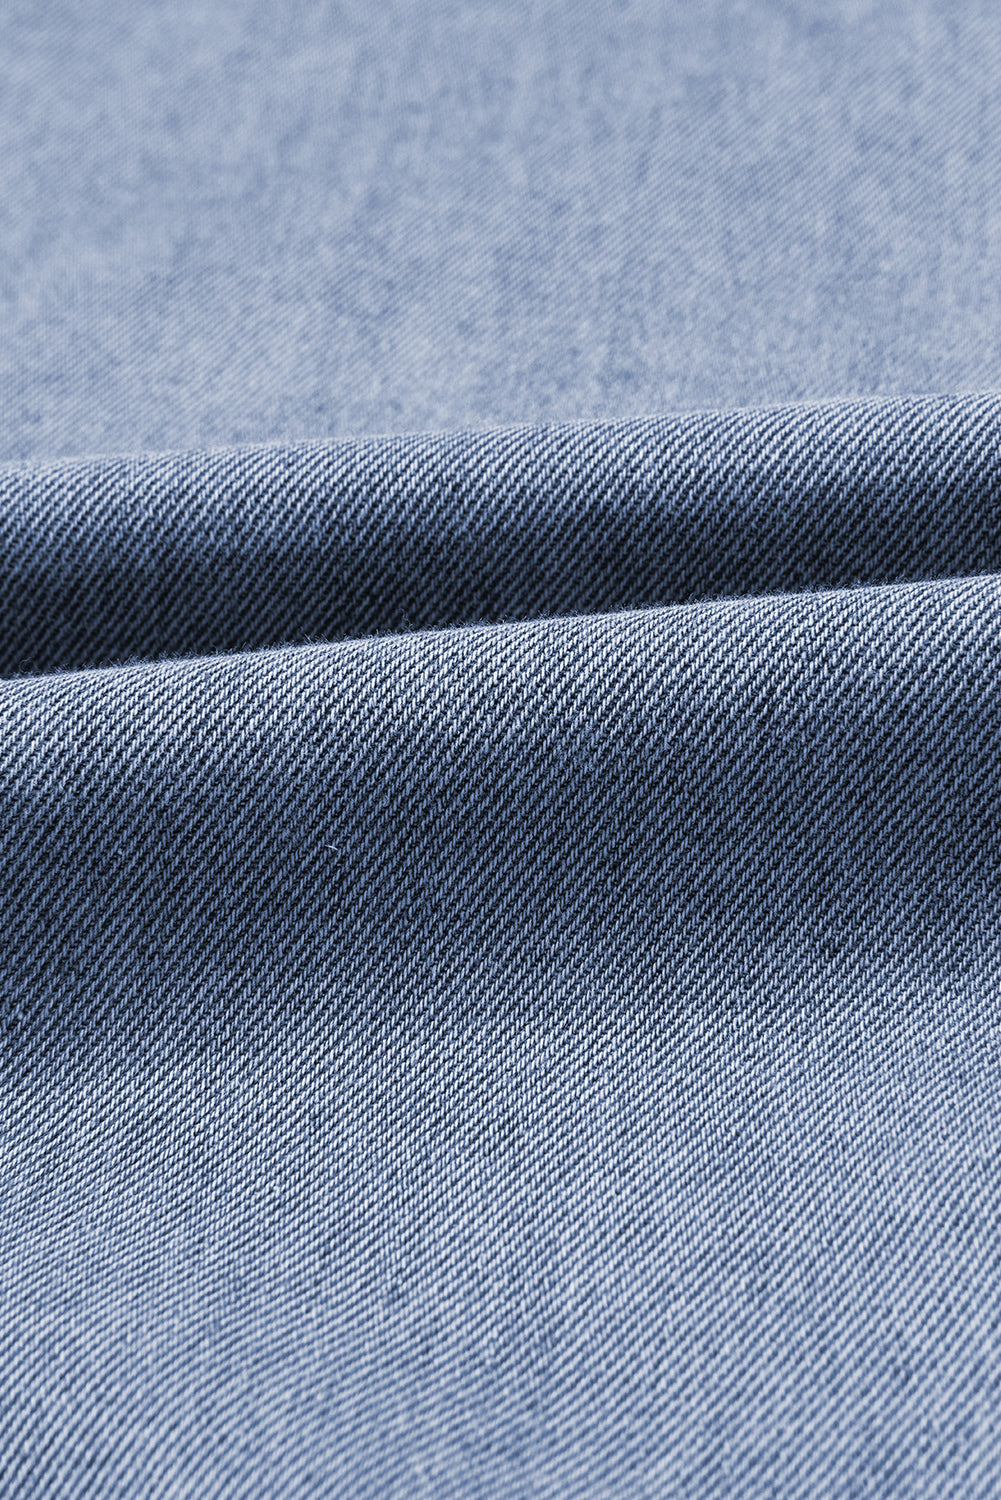 Blaue Jeansweste mit geflochtenem Besatz und Taschen von Ashleigh